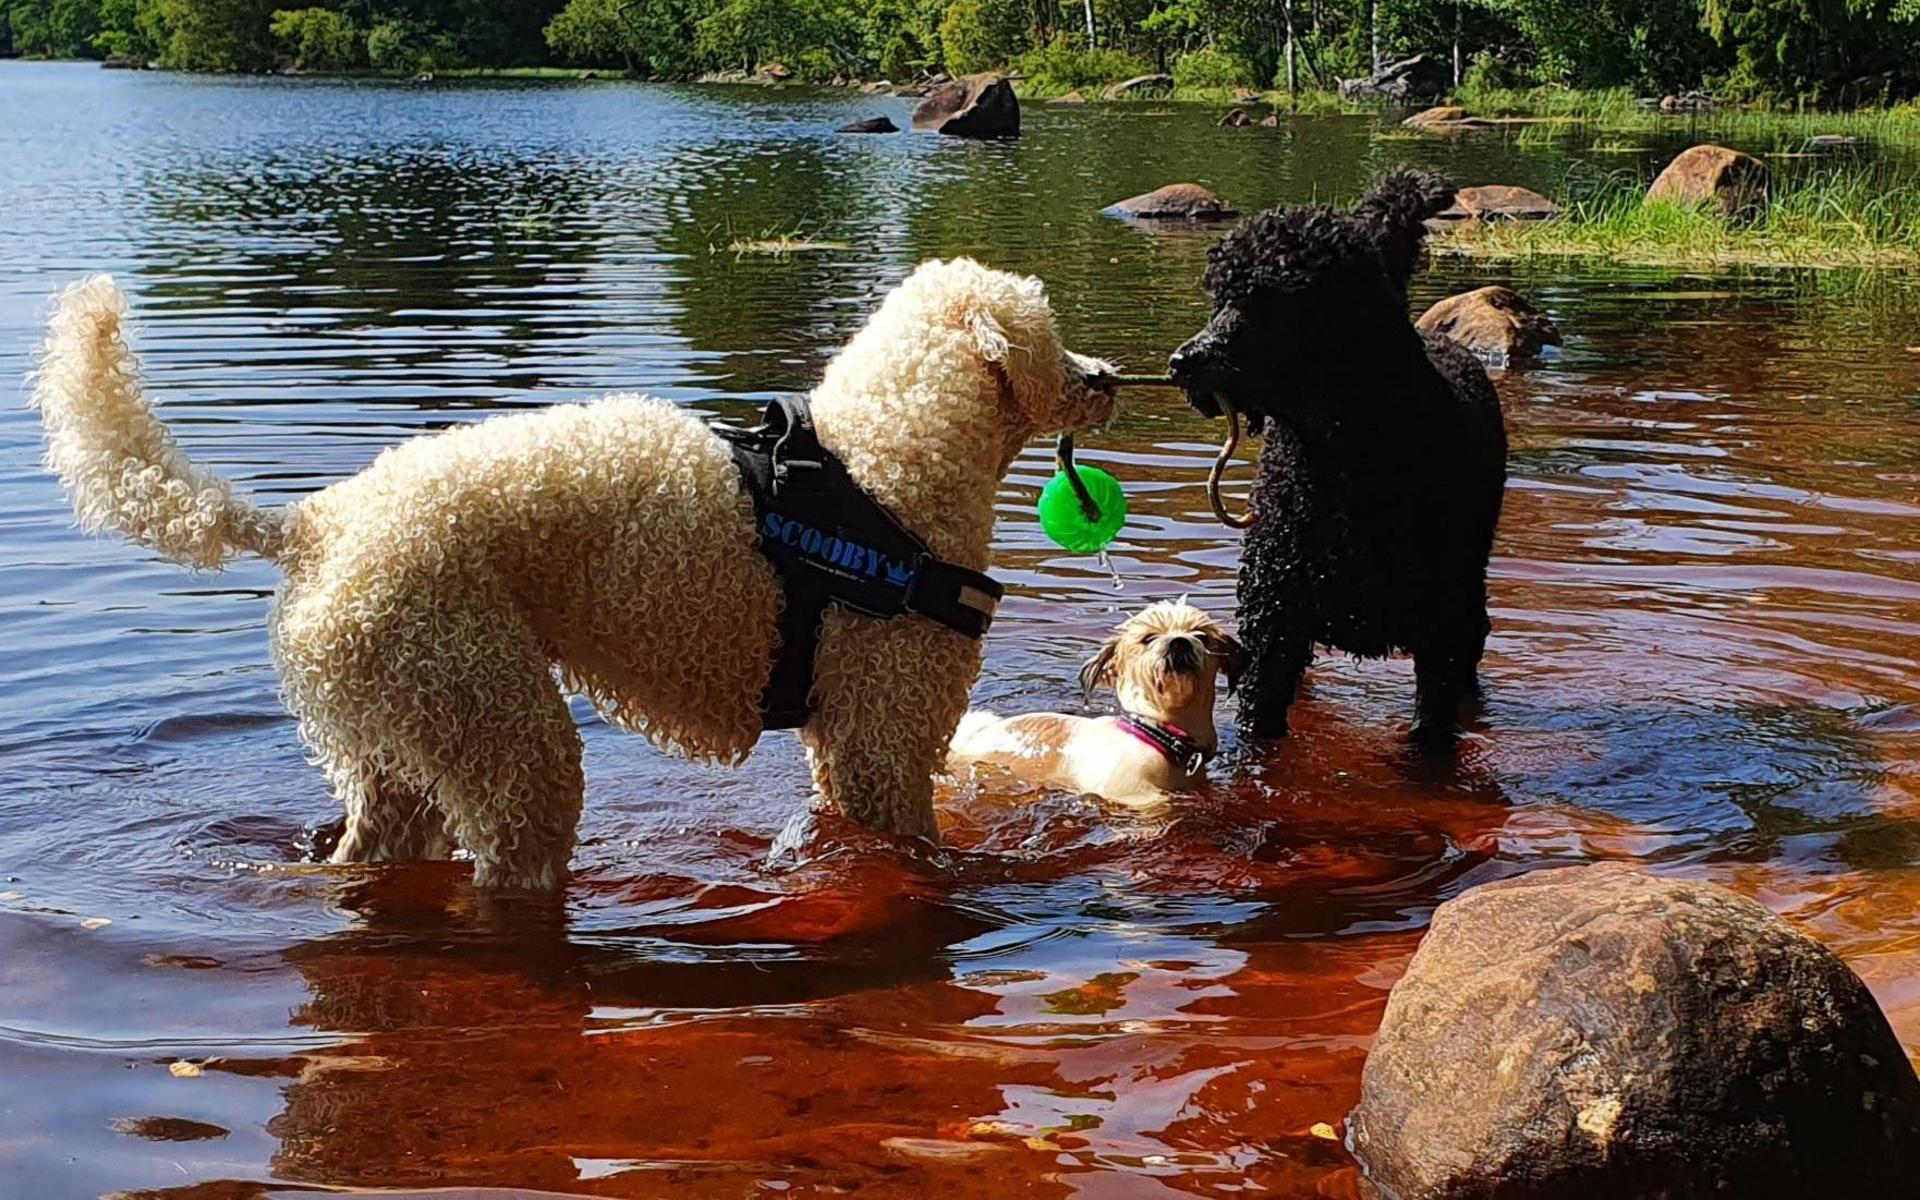 ”Här har Scooby(vit) och Ebbot(svart) dragkamp i vattnet och lilla Zally tittar på” skriver Susann Hellgren i Kinnared, som tagit bilden.